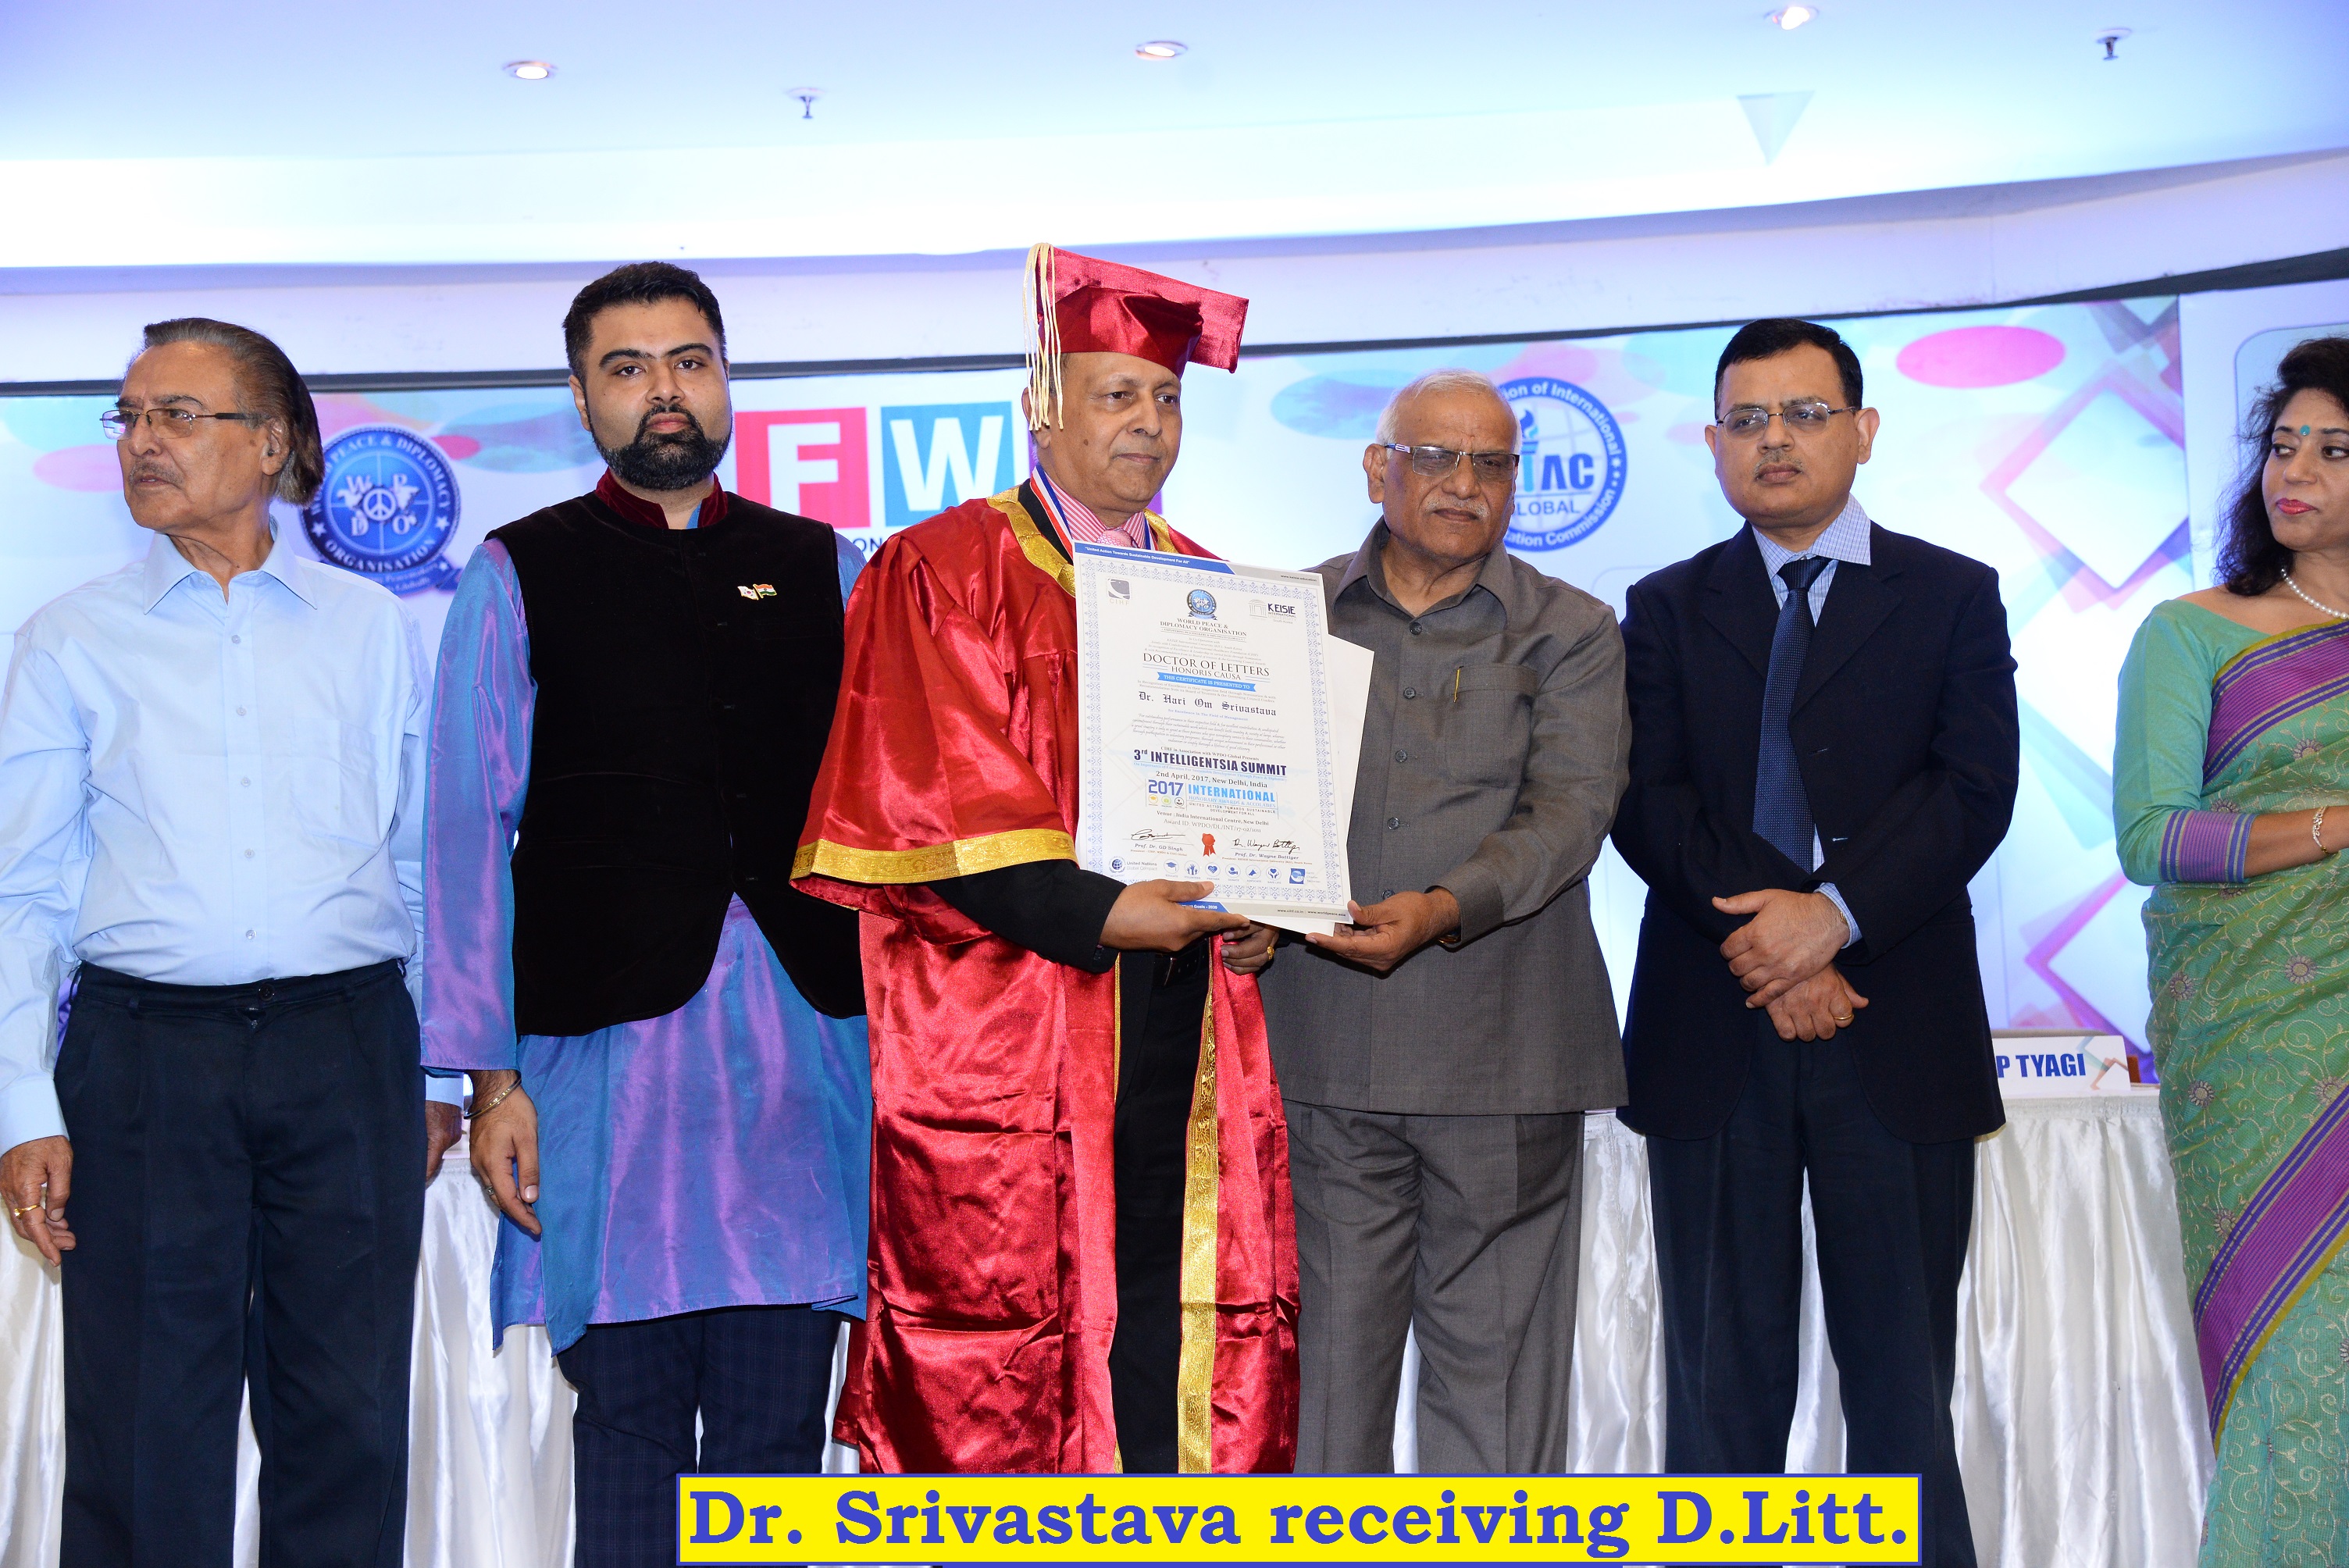 Dr. H. O. Srivastava receiving D.Litt.